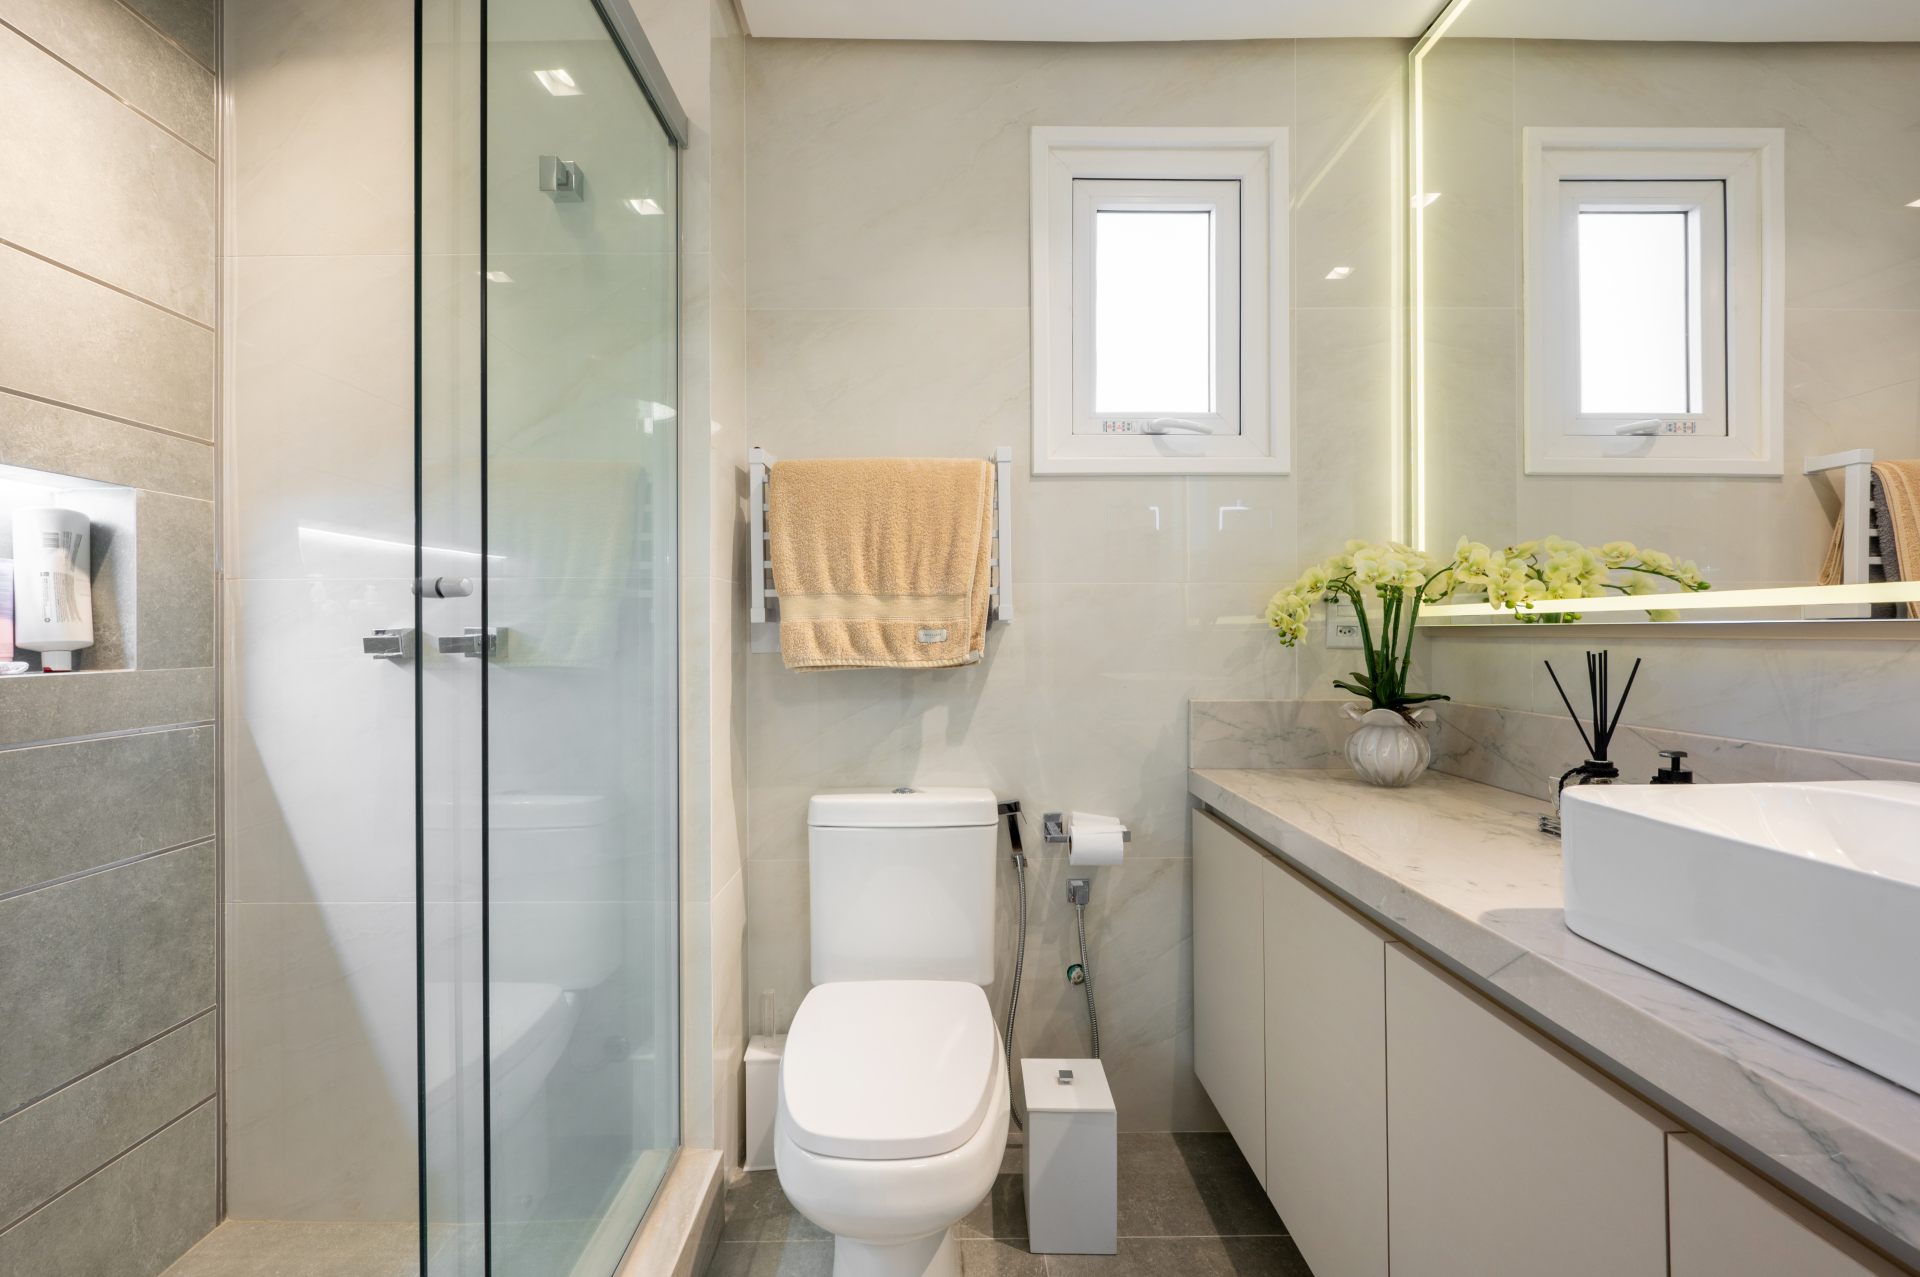 Banheiro simples em tons claros, toalheiro térmico branco